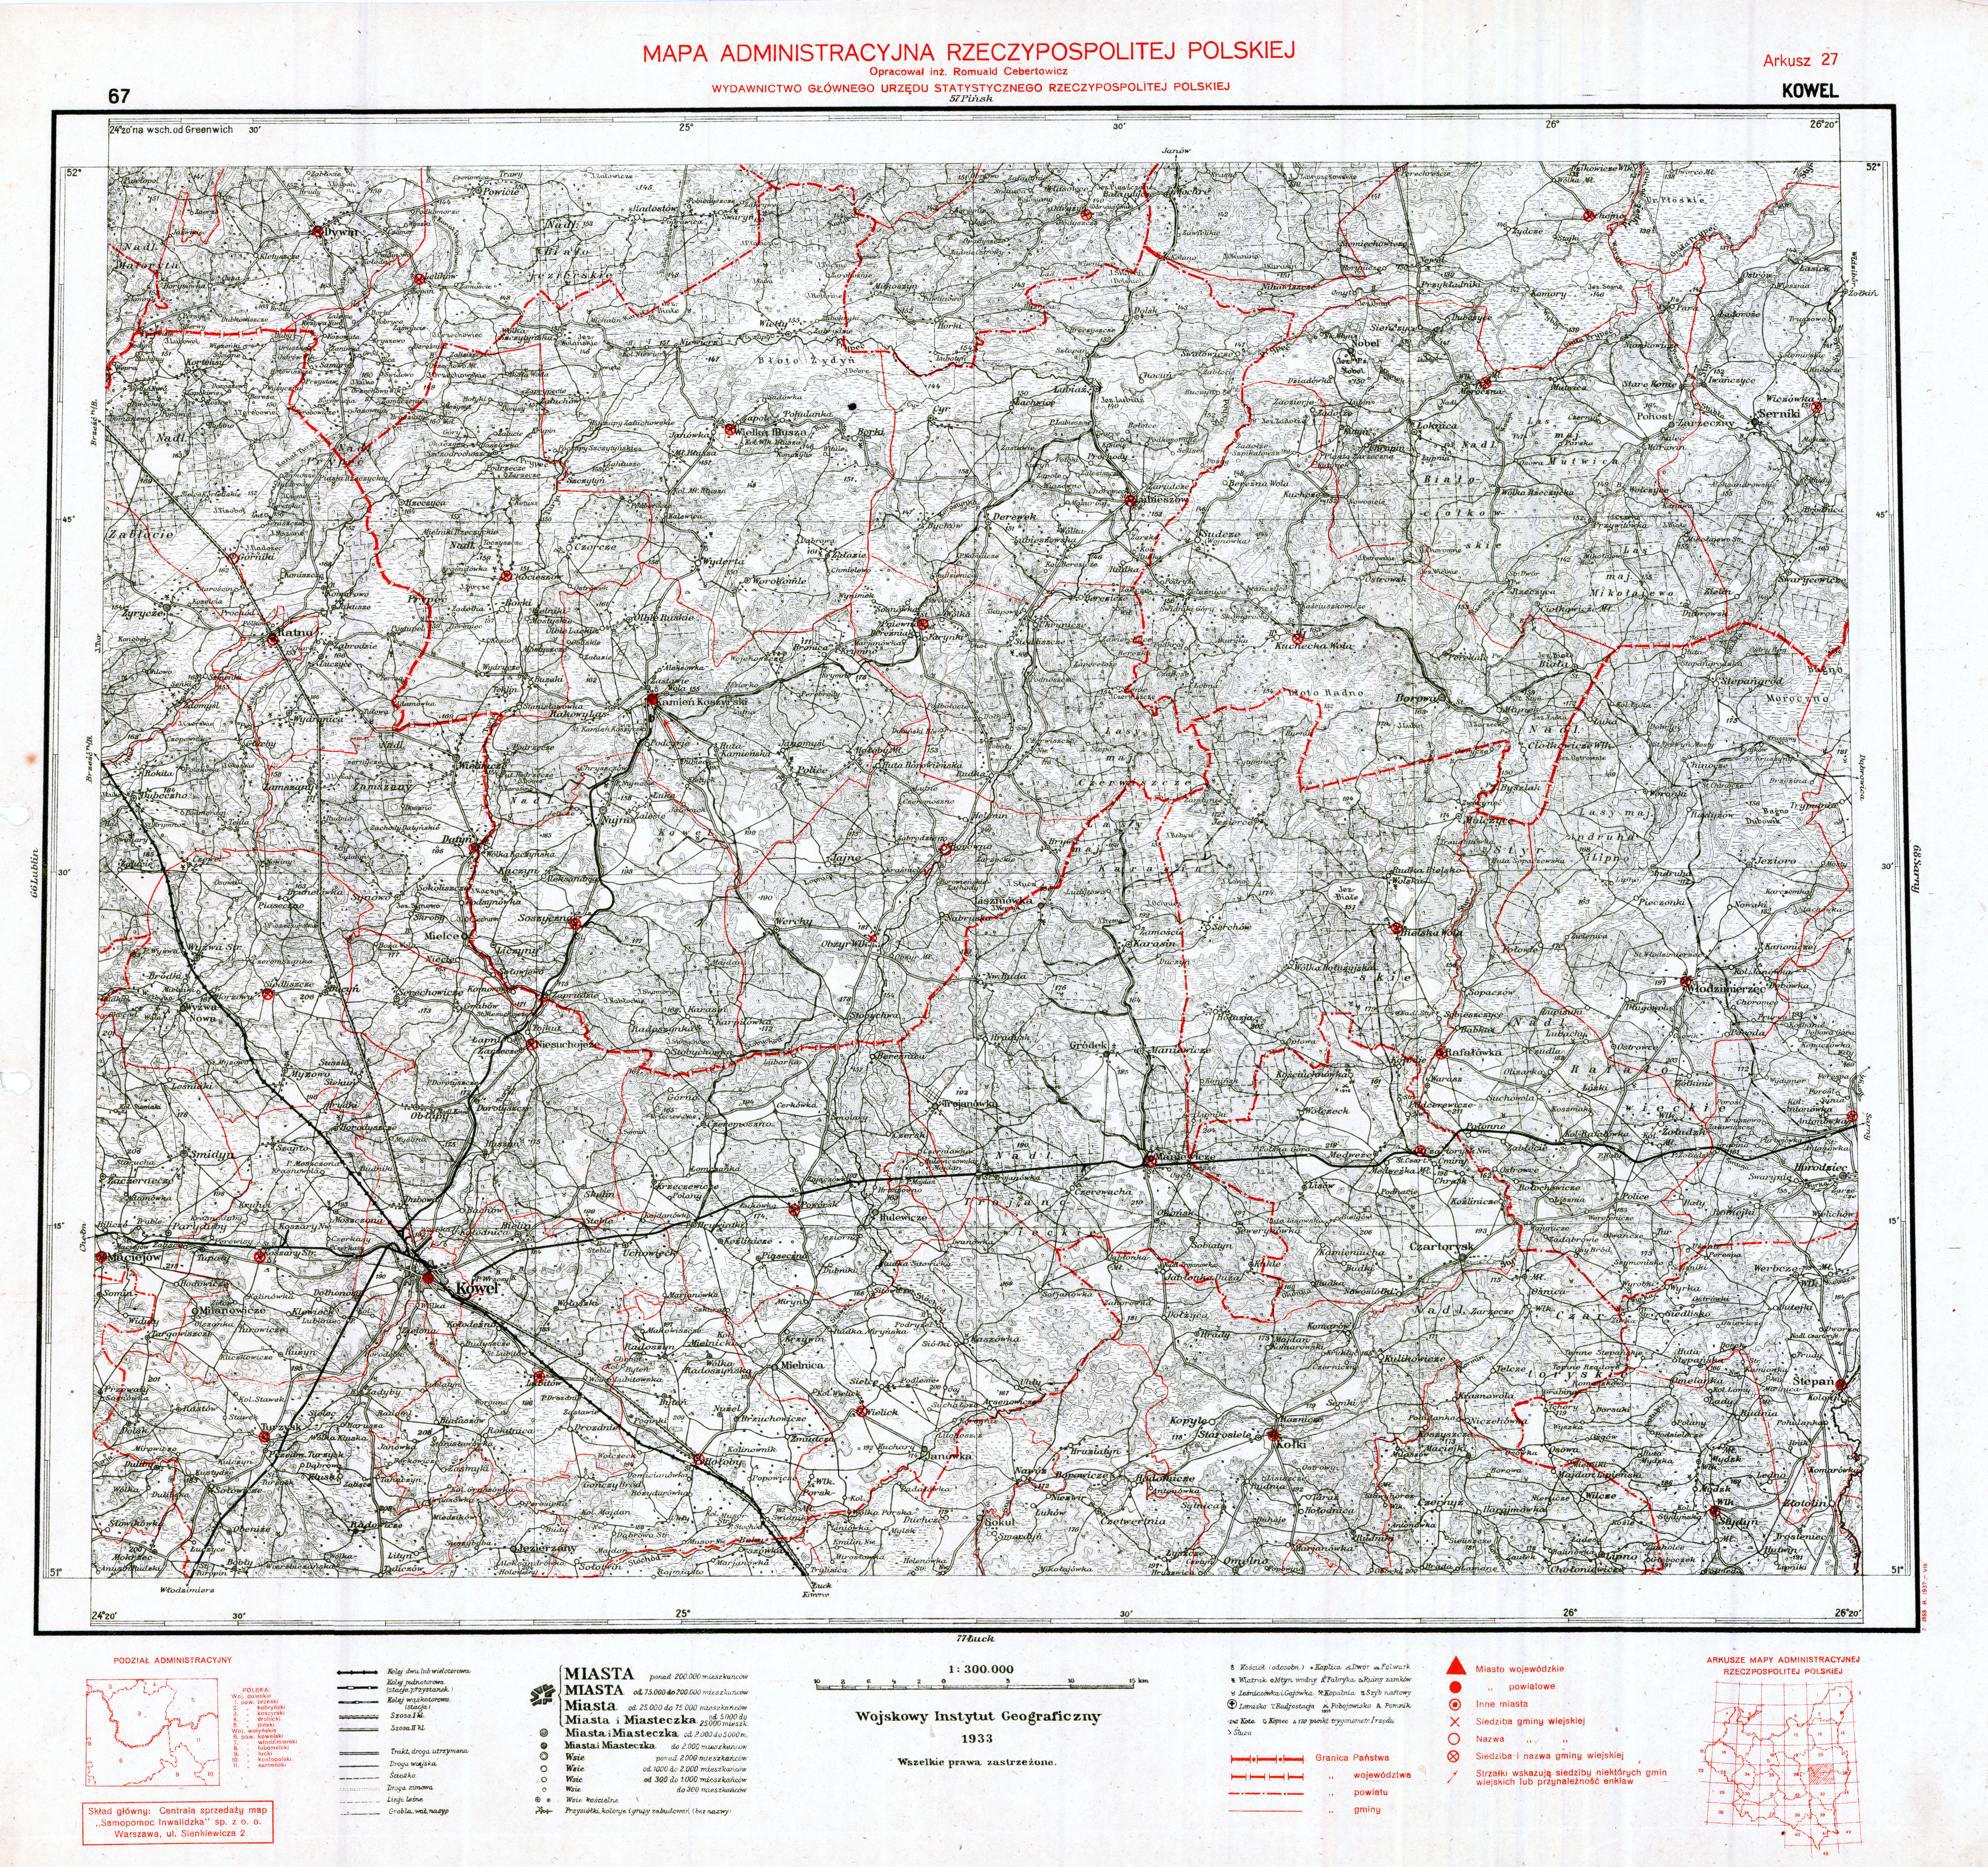 mapa administracyjna Rzeczypospolitej Polskie j z 19371_300 000 - MARP_27_KOWEL_1937.jpg